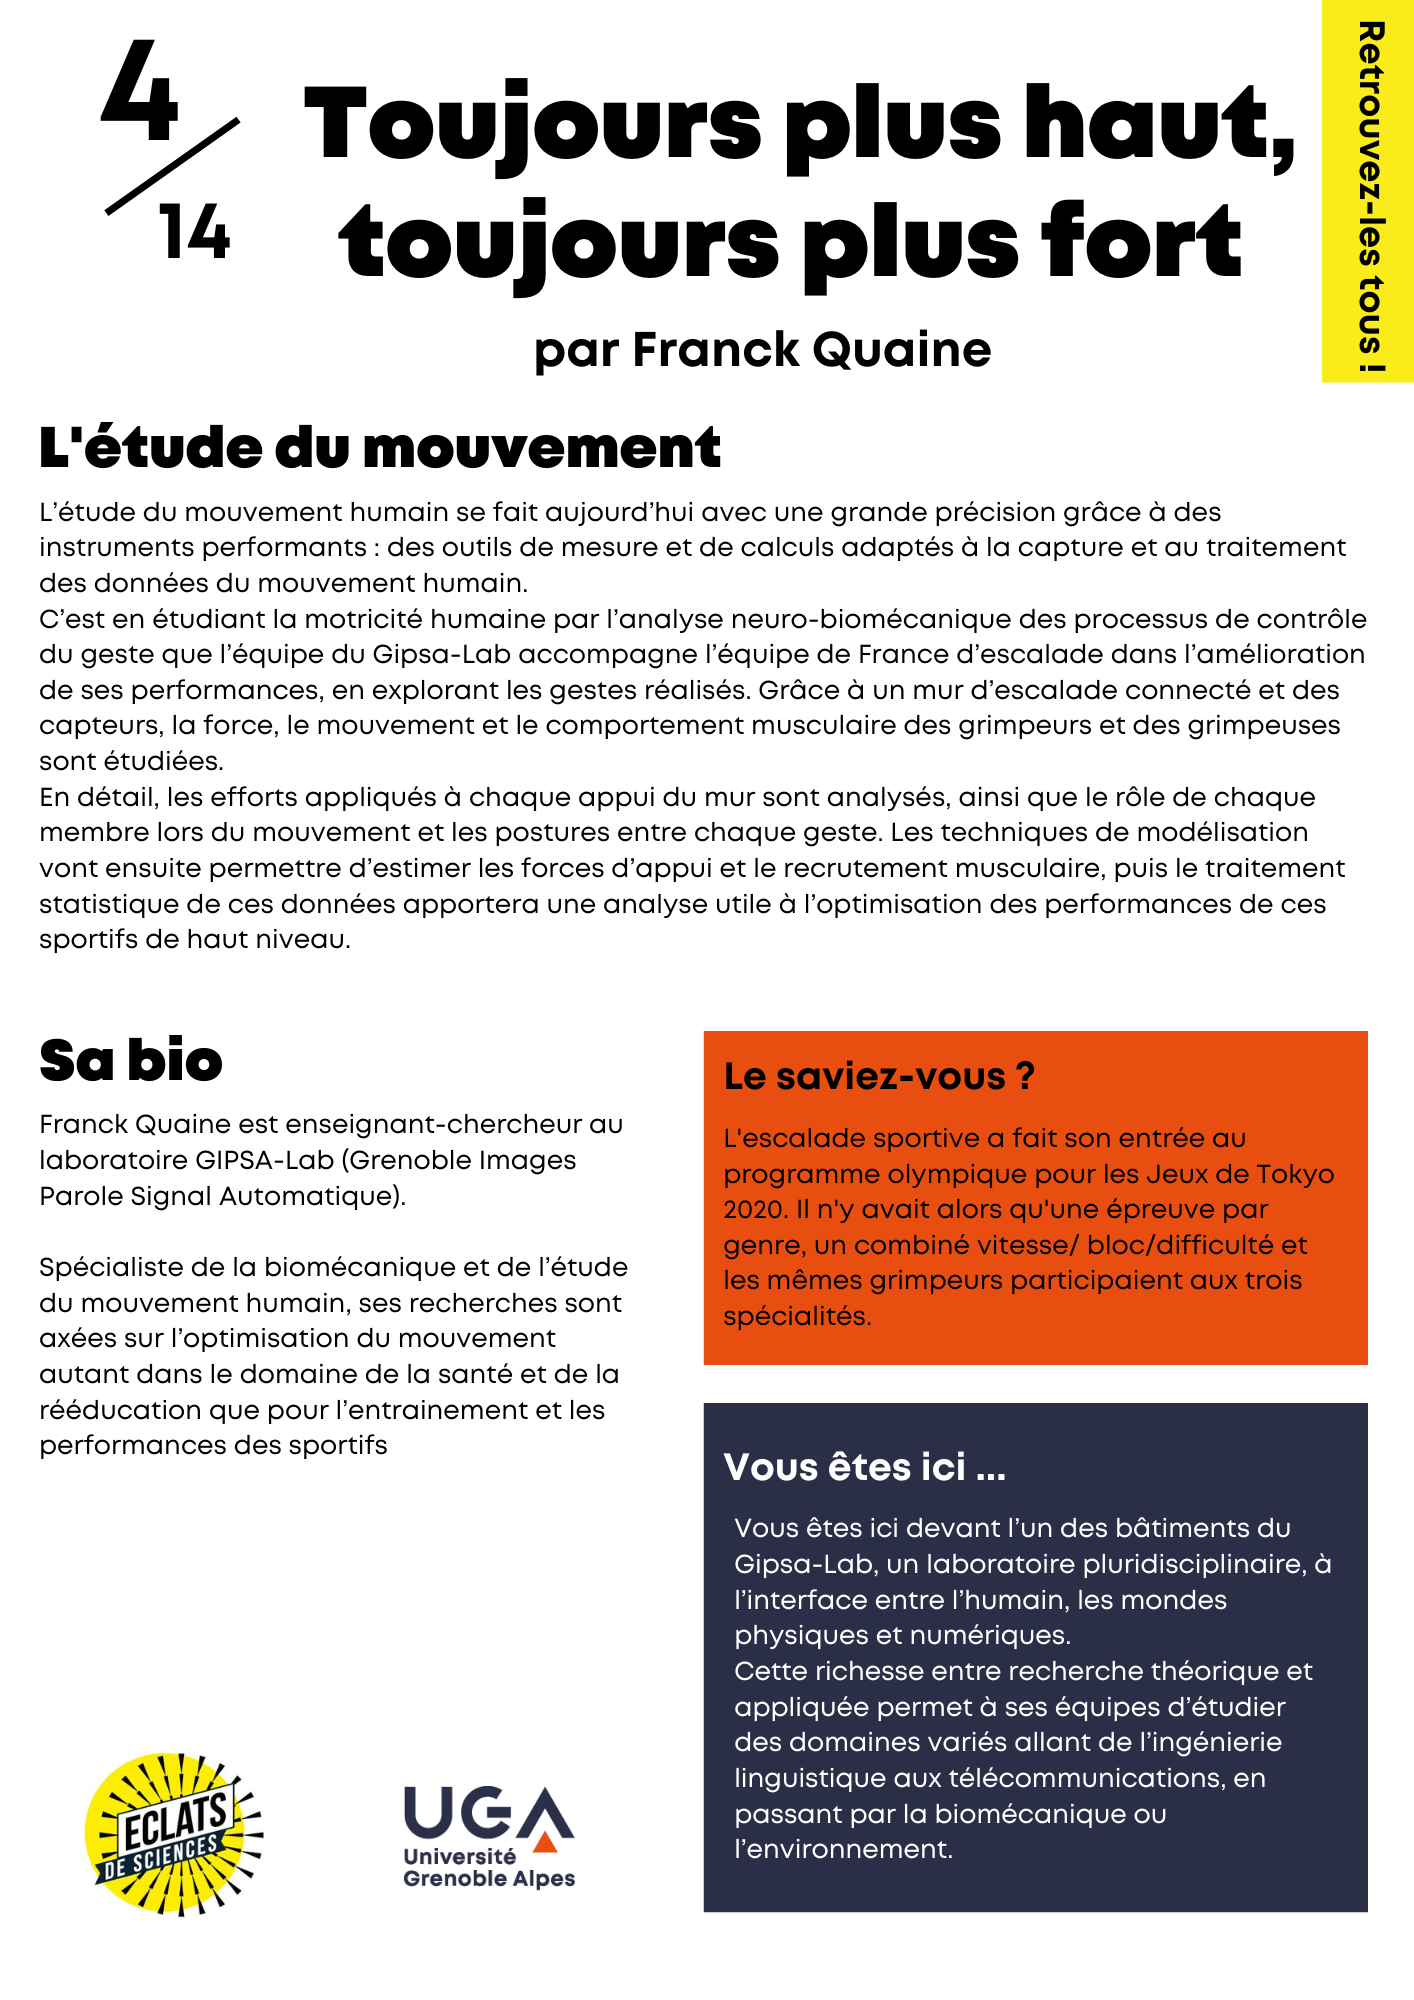 Franck Quaine